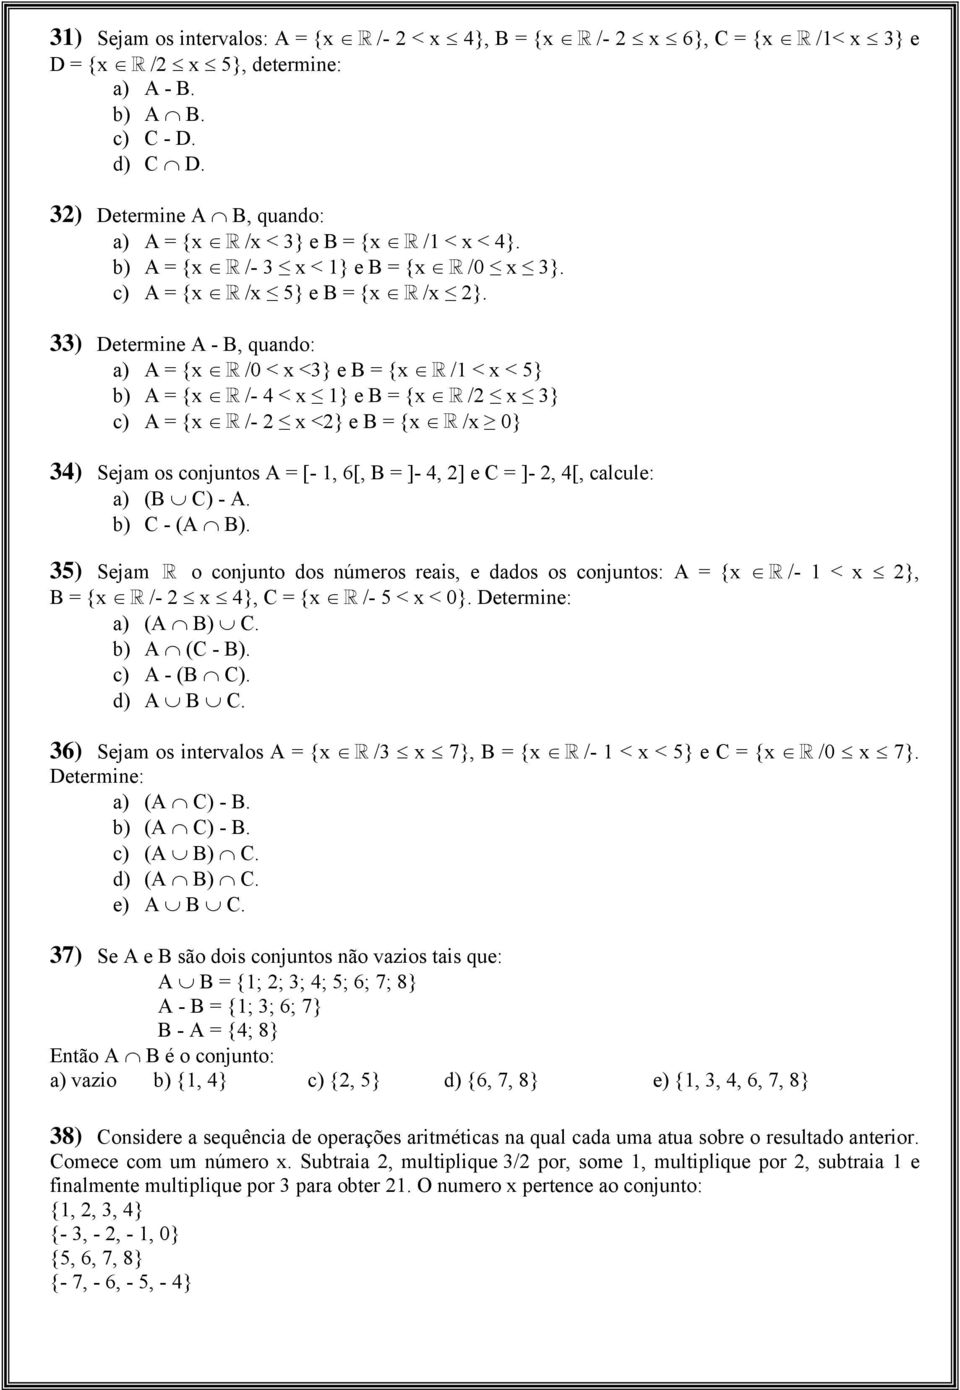 33) Determine A - B, quando: a) A = {x /0 < x <3} e B = {x /1 < x < 5} b) A = {x /- 4 < x 1} e B = {x /2 x 3} c) A = {x /- 2 x <2} e B = {x /x 0} 34) Sejam os conjuntos A = [- 1, 6[, B = ]- 4, 2] e C